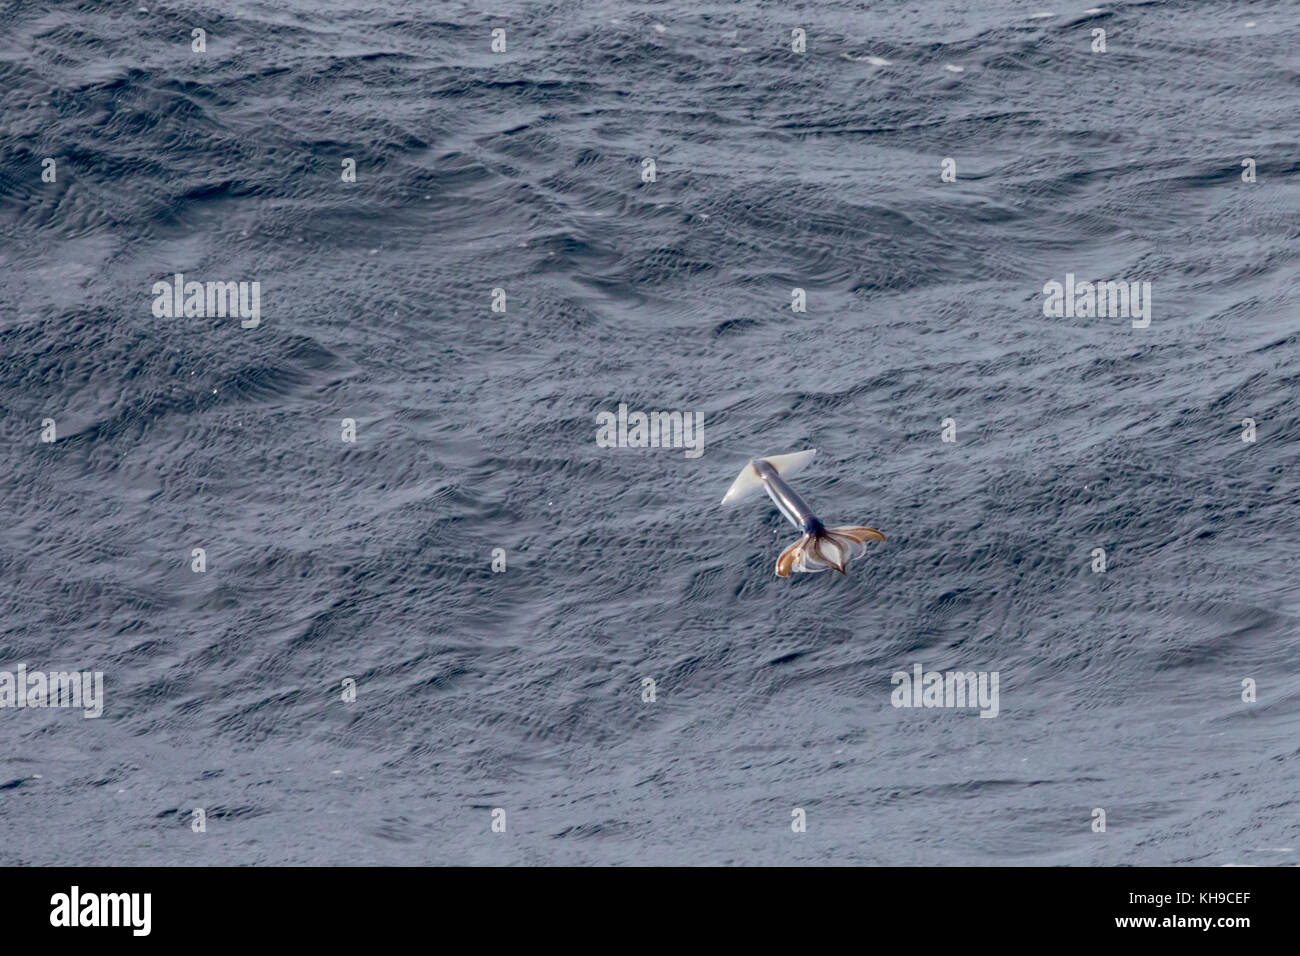 Wenig bekannte Flying squid aus dem Wasser nehmen vom Jet Propulsion Plünderung in der Mitte des Atlantischen Ozeans zu entkommen Stockfoto